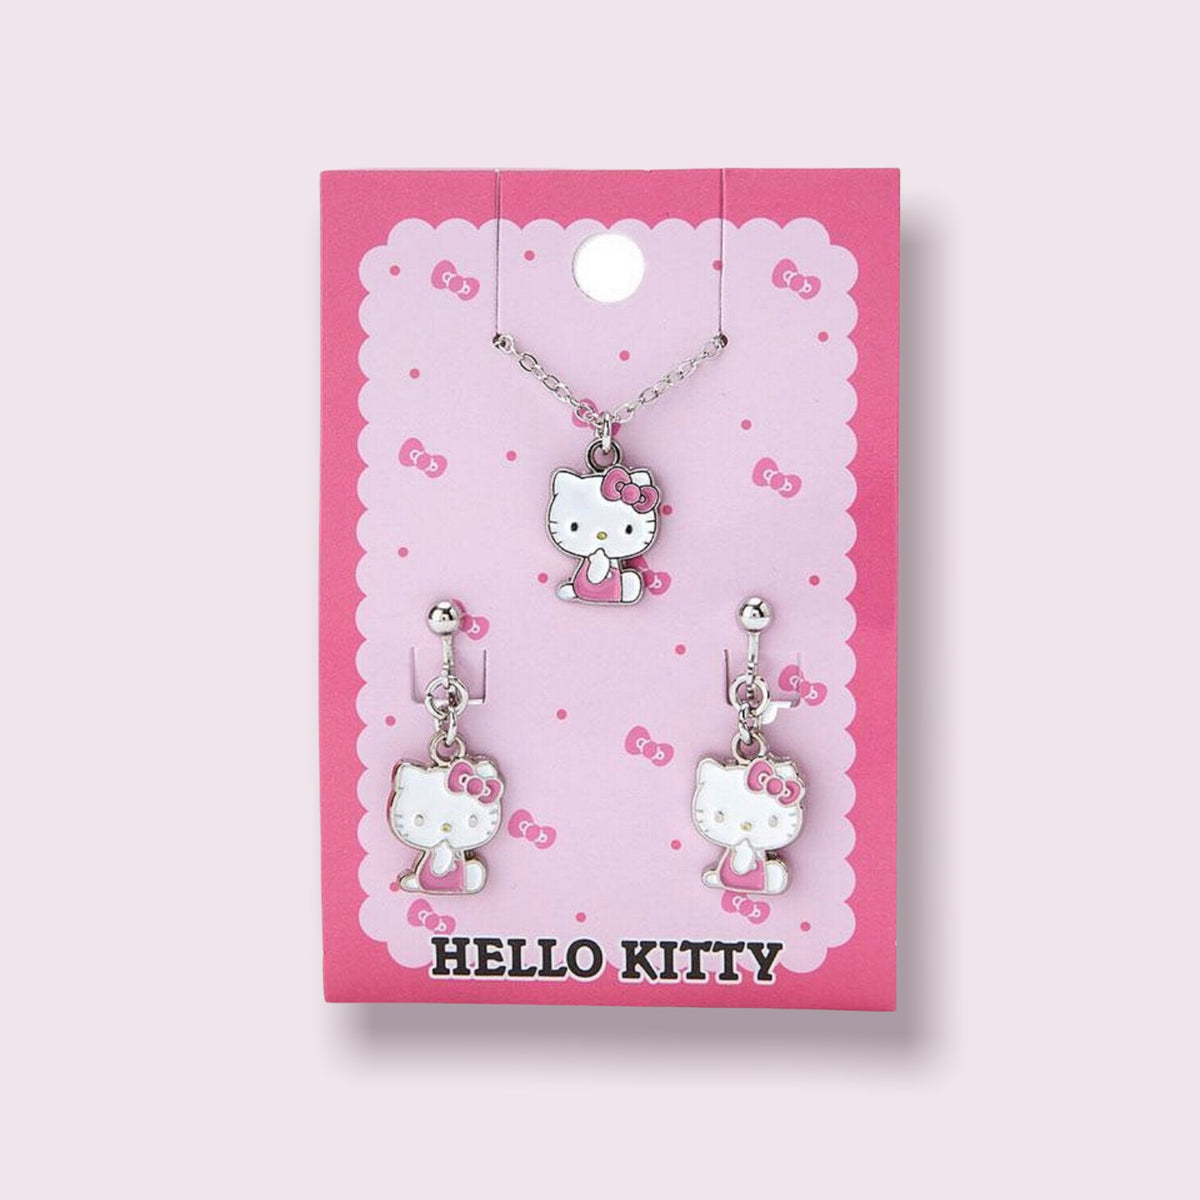 Porte clef hello kitty pom-pom violet - Boutique hello kitty